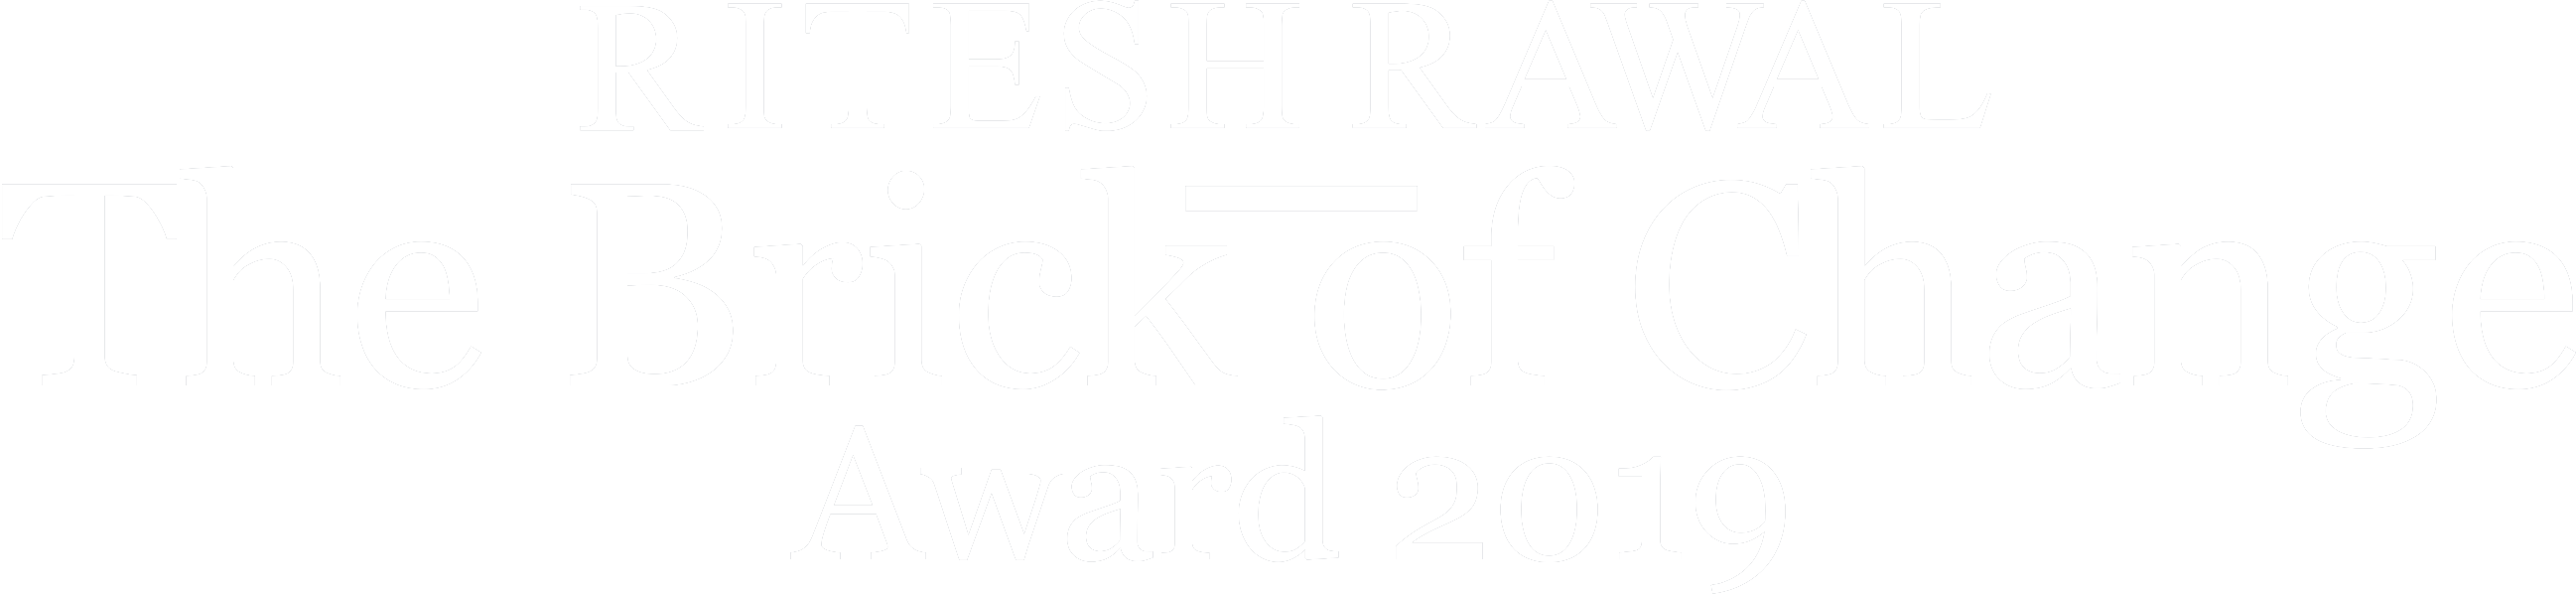 Ritesh Rawal Foundation Awards